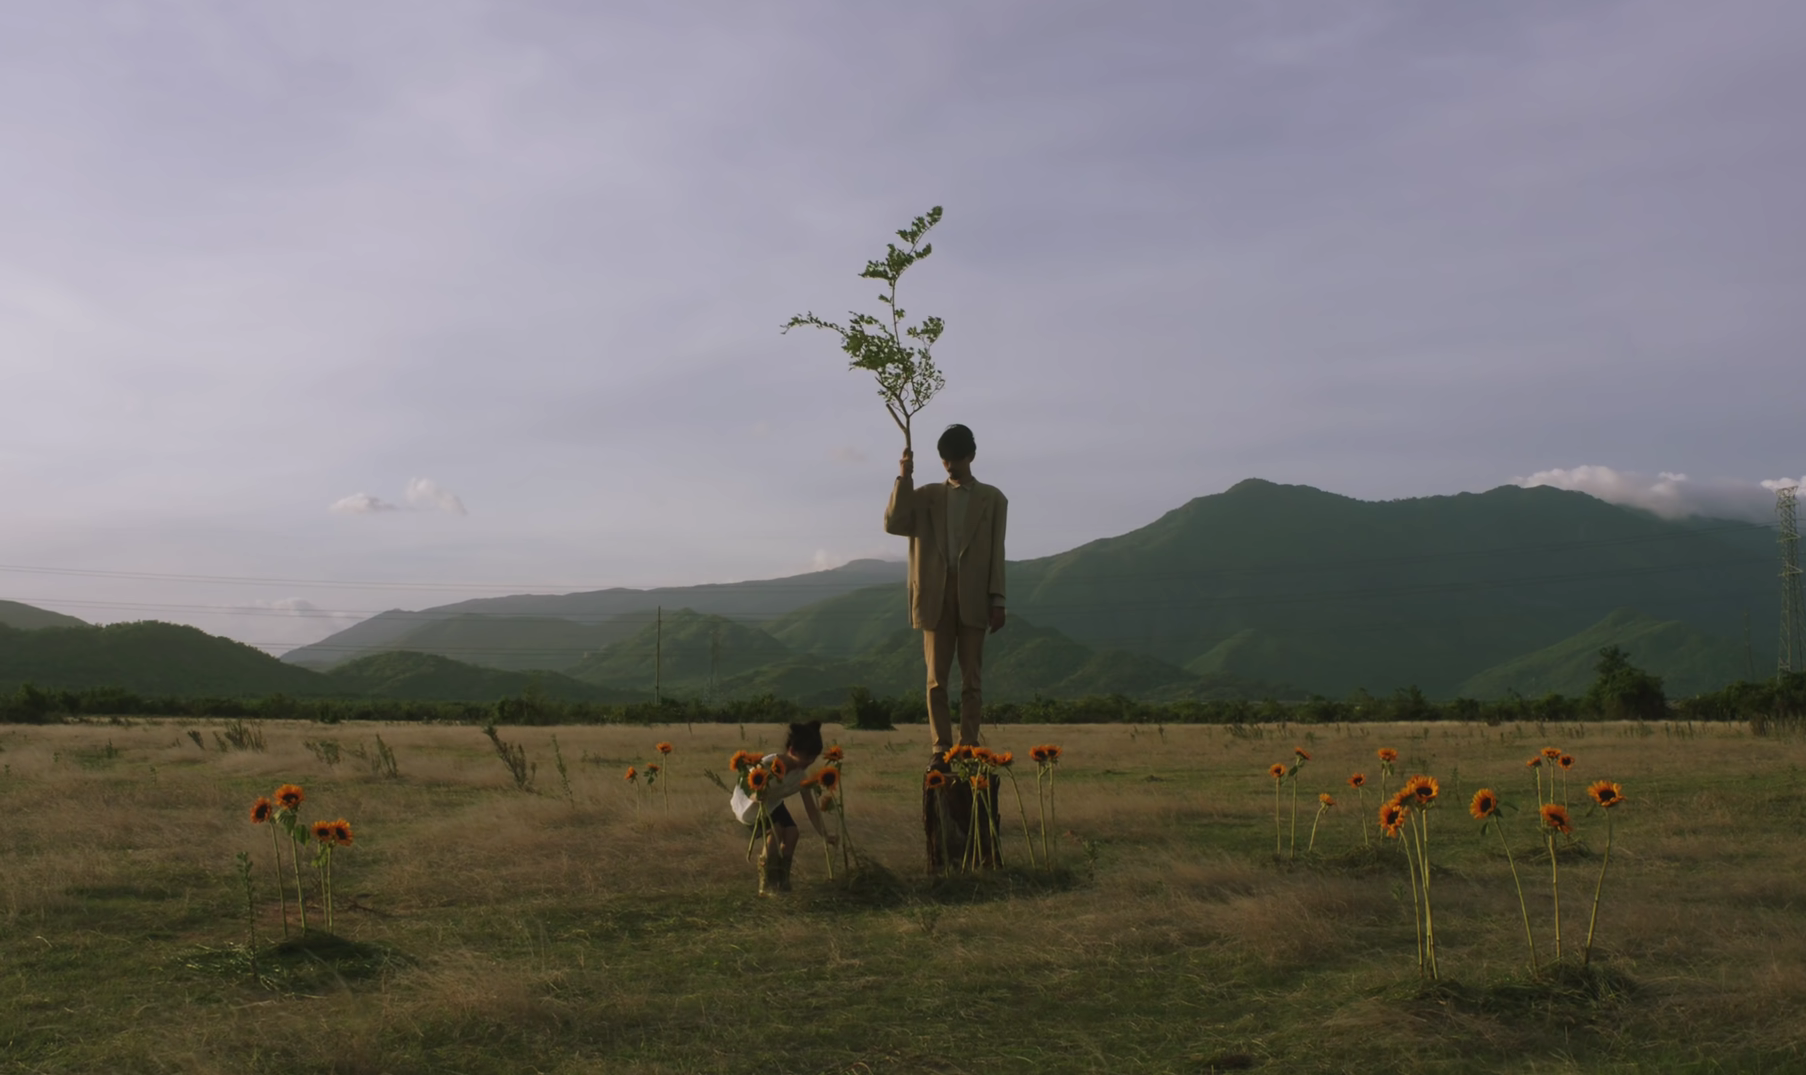 Khám phá đồng cỏ đẹp như thảo nguyên trong MV "Trốn tìm" của Đen Vâu - 1